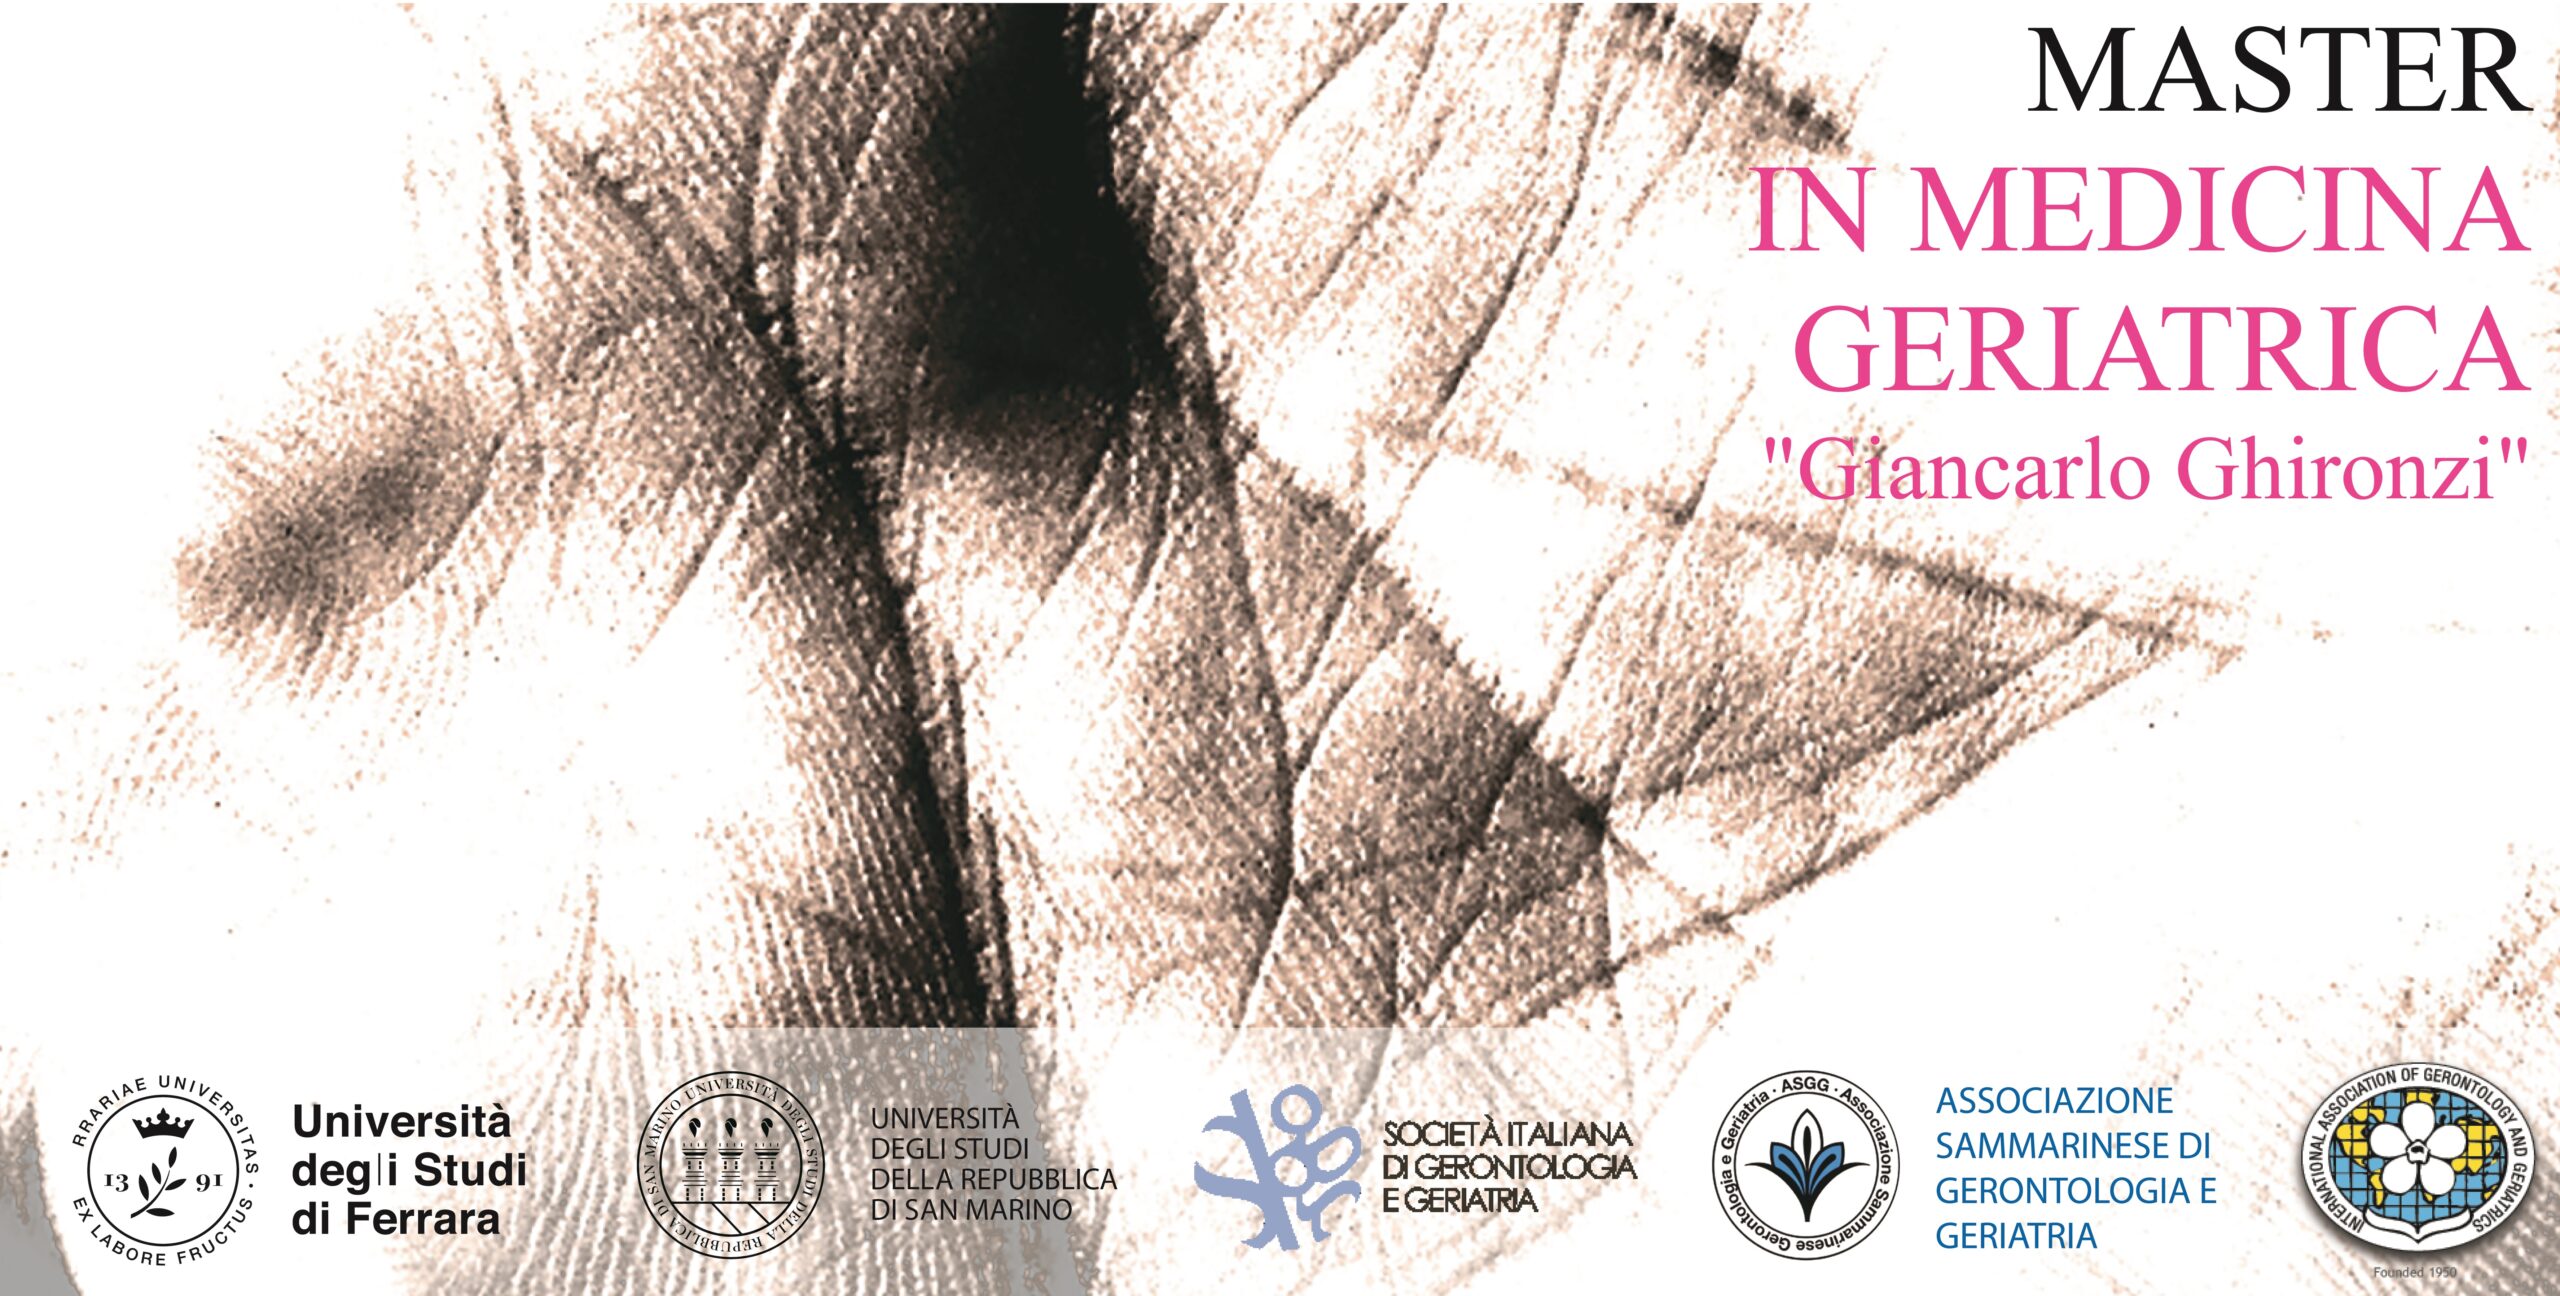 San Marino. Inaugurata la XI edizione del Master in Medicina Geriatrica “Giancarlo Ghironzi”